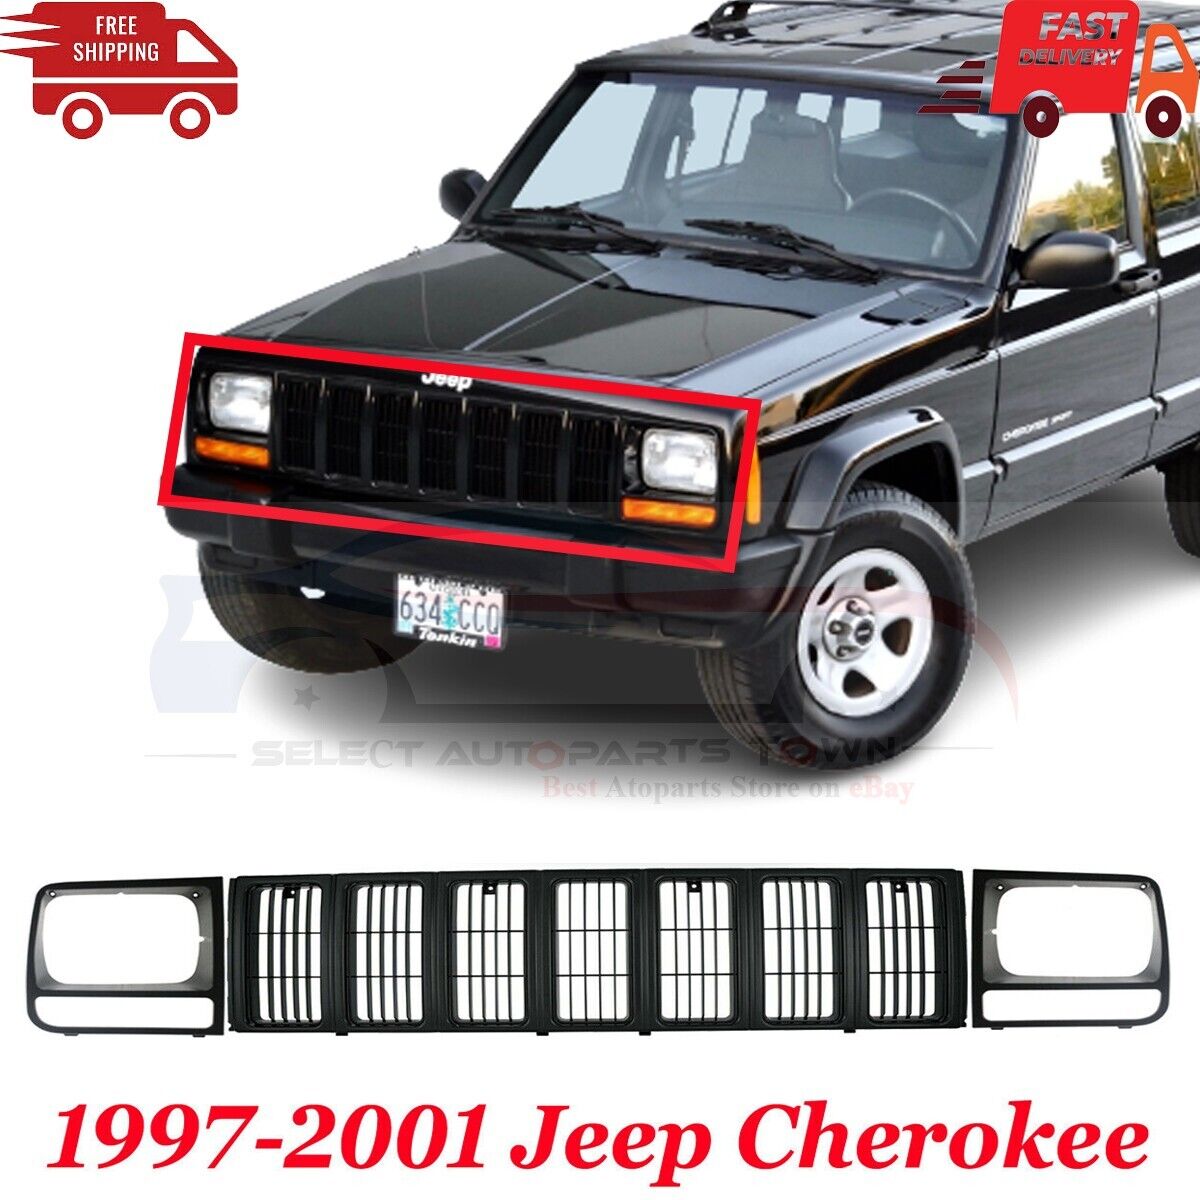 New Fits 97-01 Jeep Cherokee Front Grille & Headlamp Door Plastic Painted Black